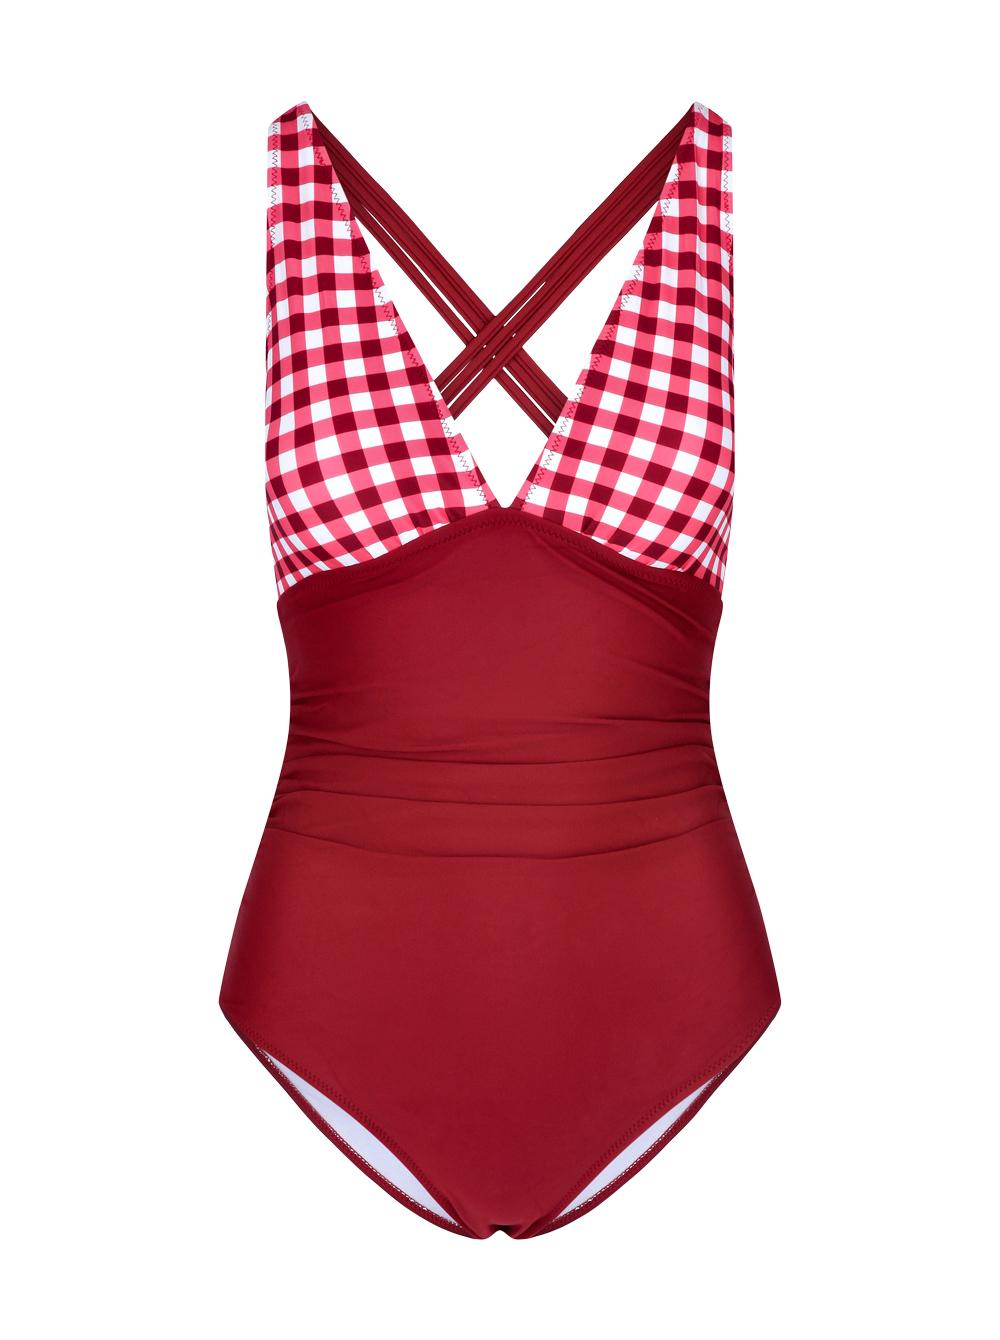 Selected image for CUPSHE Ženski jednodelni kupaći kostim J10 bordo